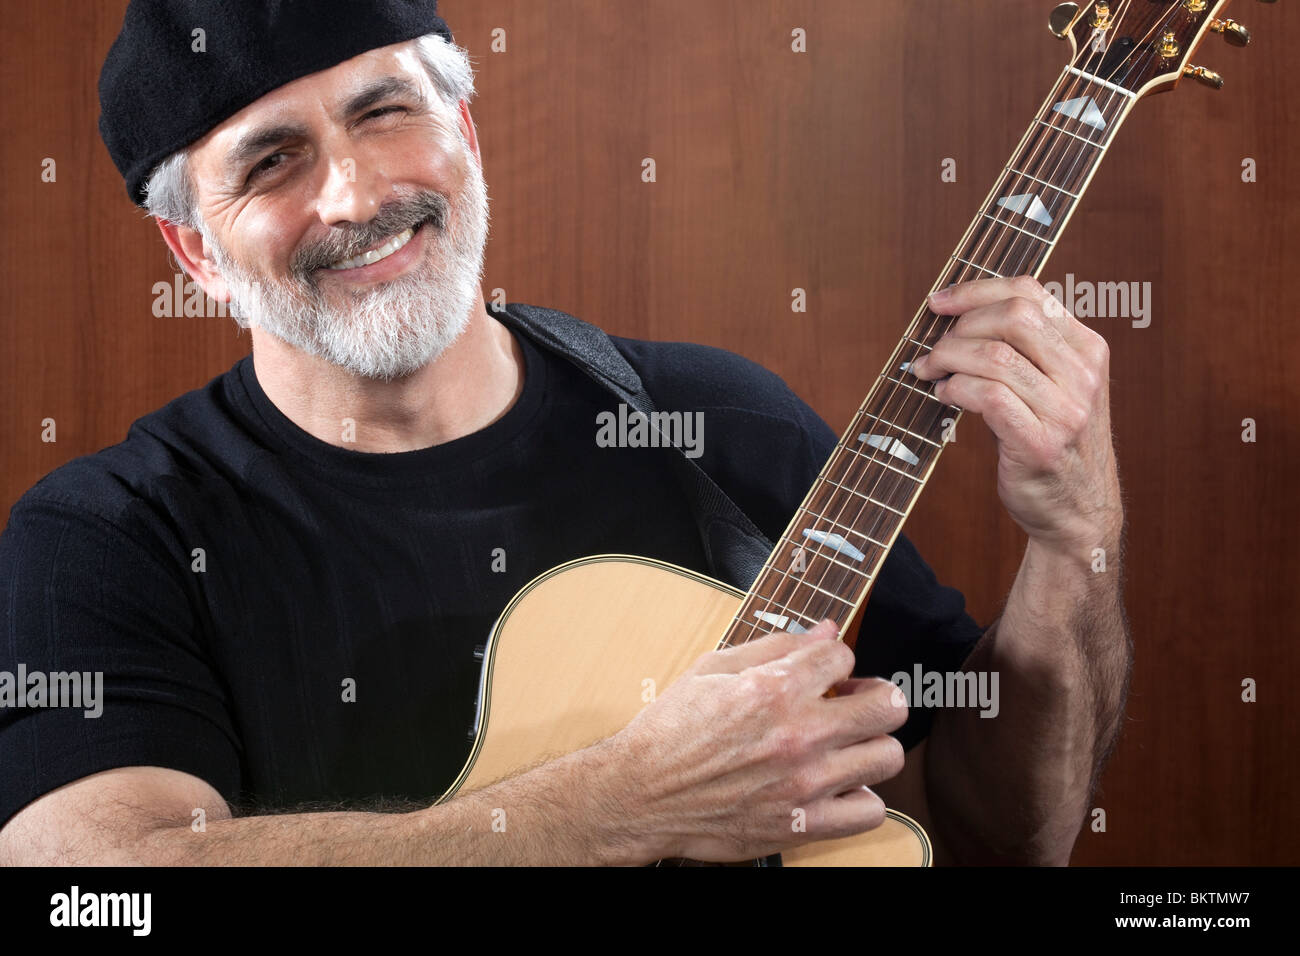 Portrait d'un homme d'âge moyen portant un béret noir et t-shirt et en jouant une guitare acoustique. Il sourit à la caméra. Banque D'Images